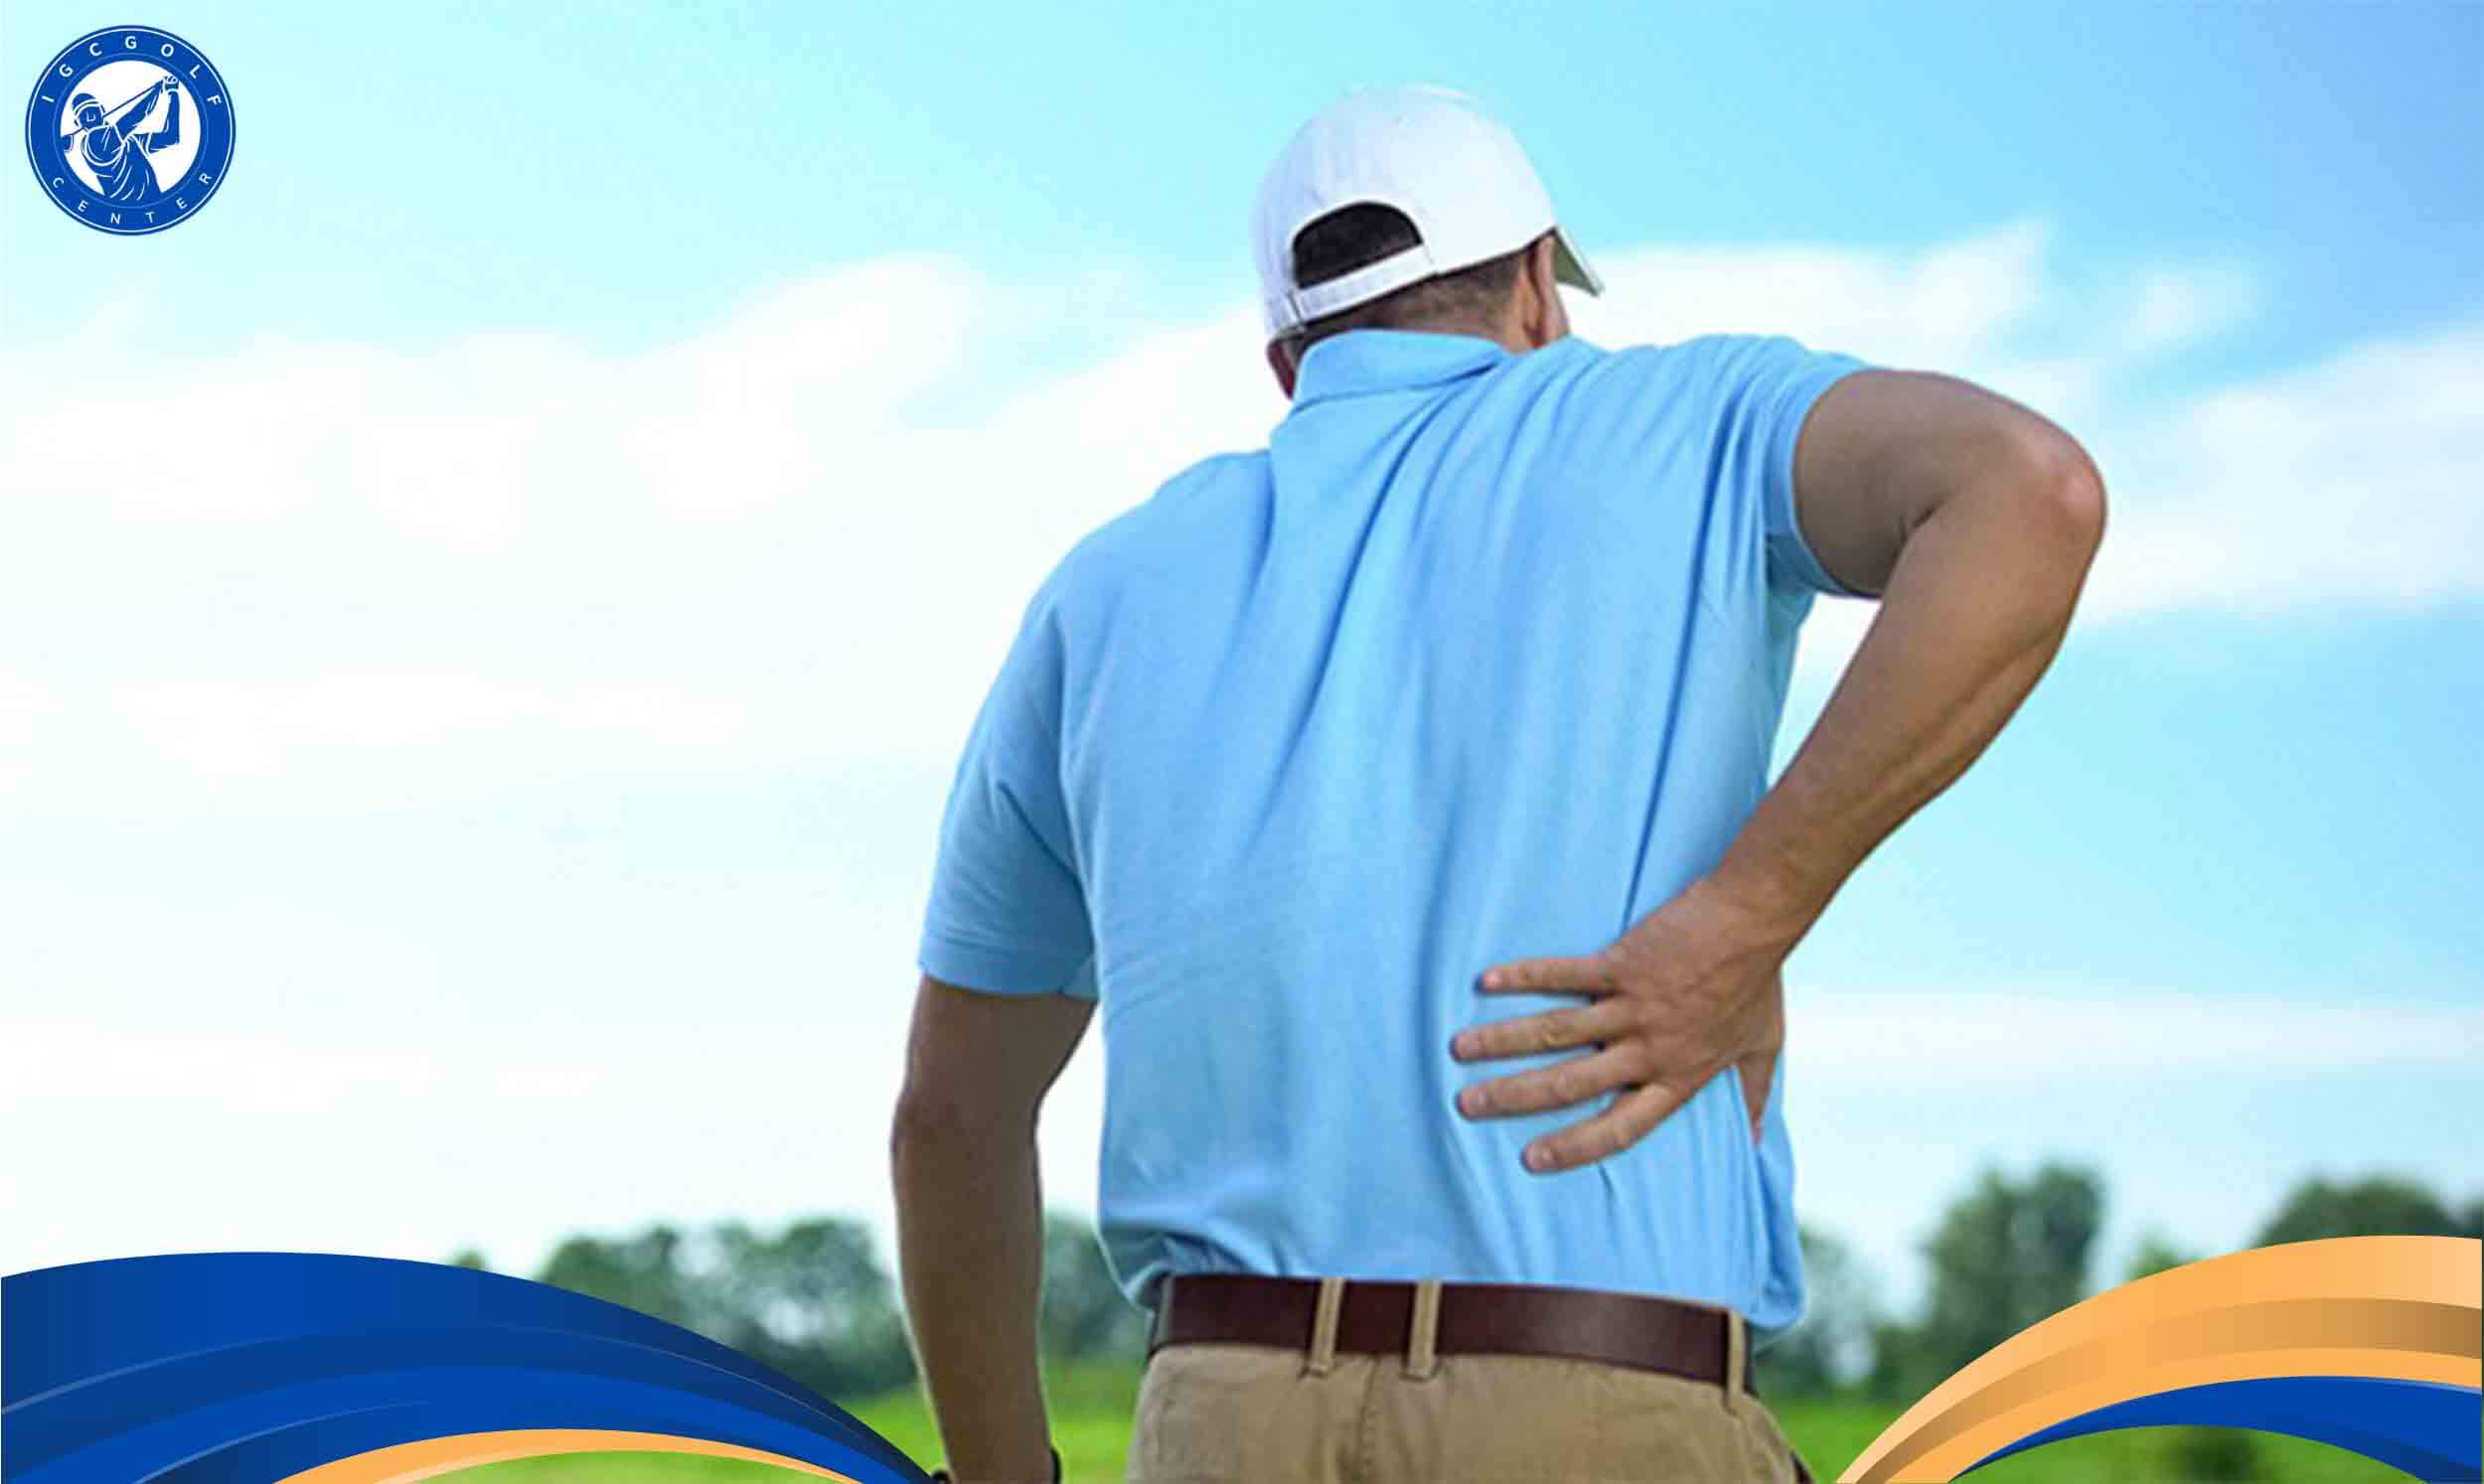 Thực trạng chơi golf bị đau lưng